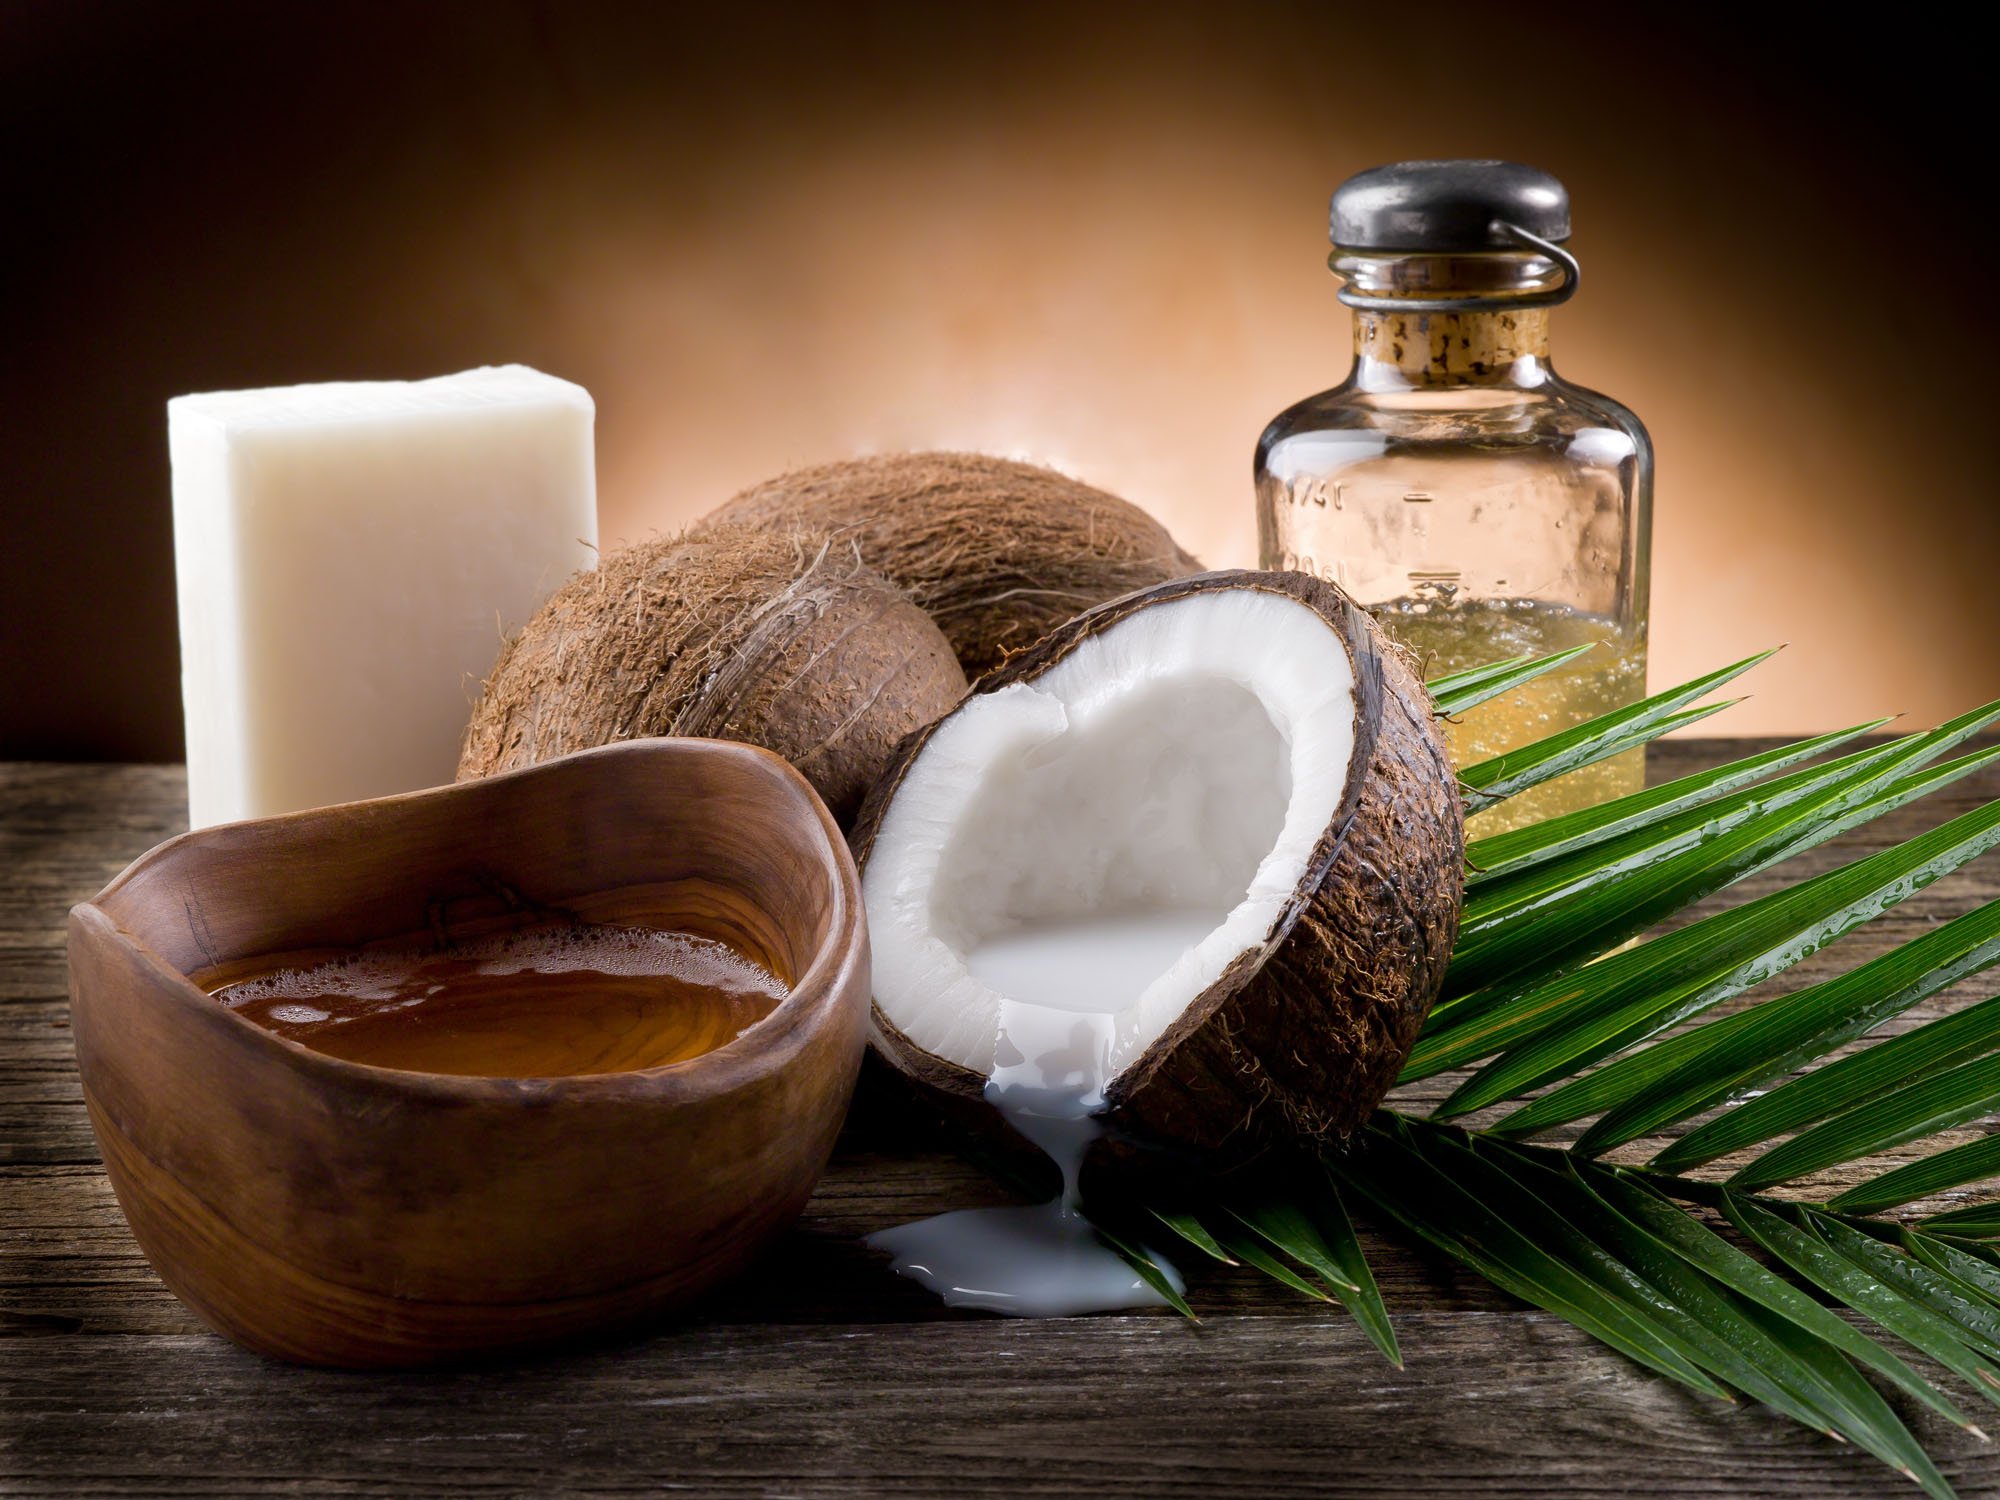 Saúde e Bem-Estar: Conheça 10 benefícios do óleo de coco (e aprenda a fazer em casa)